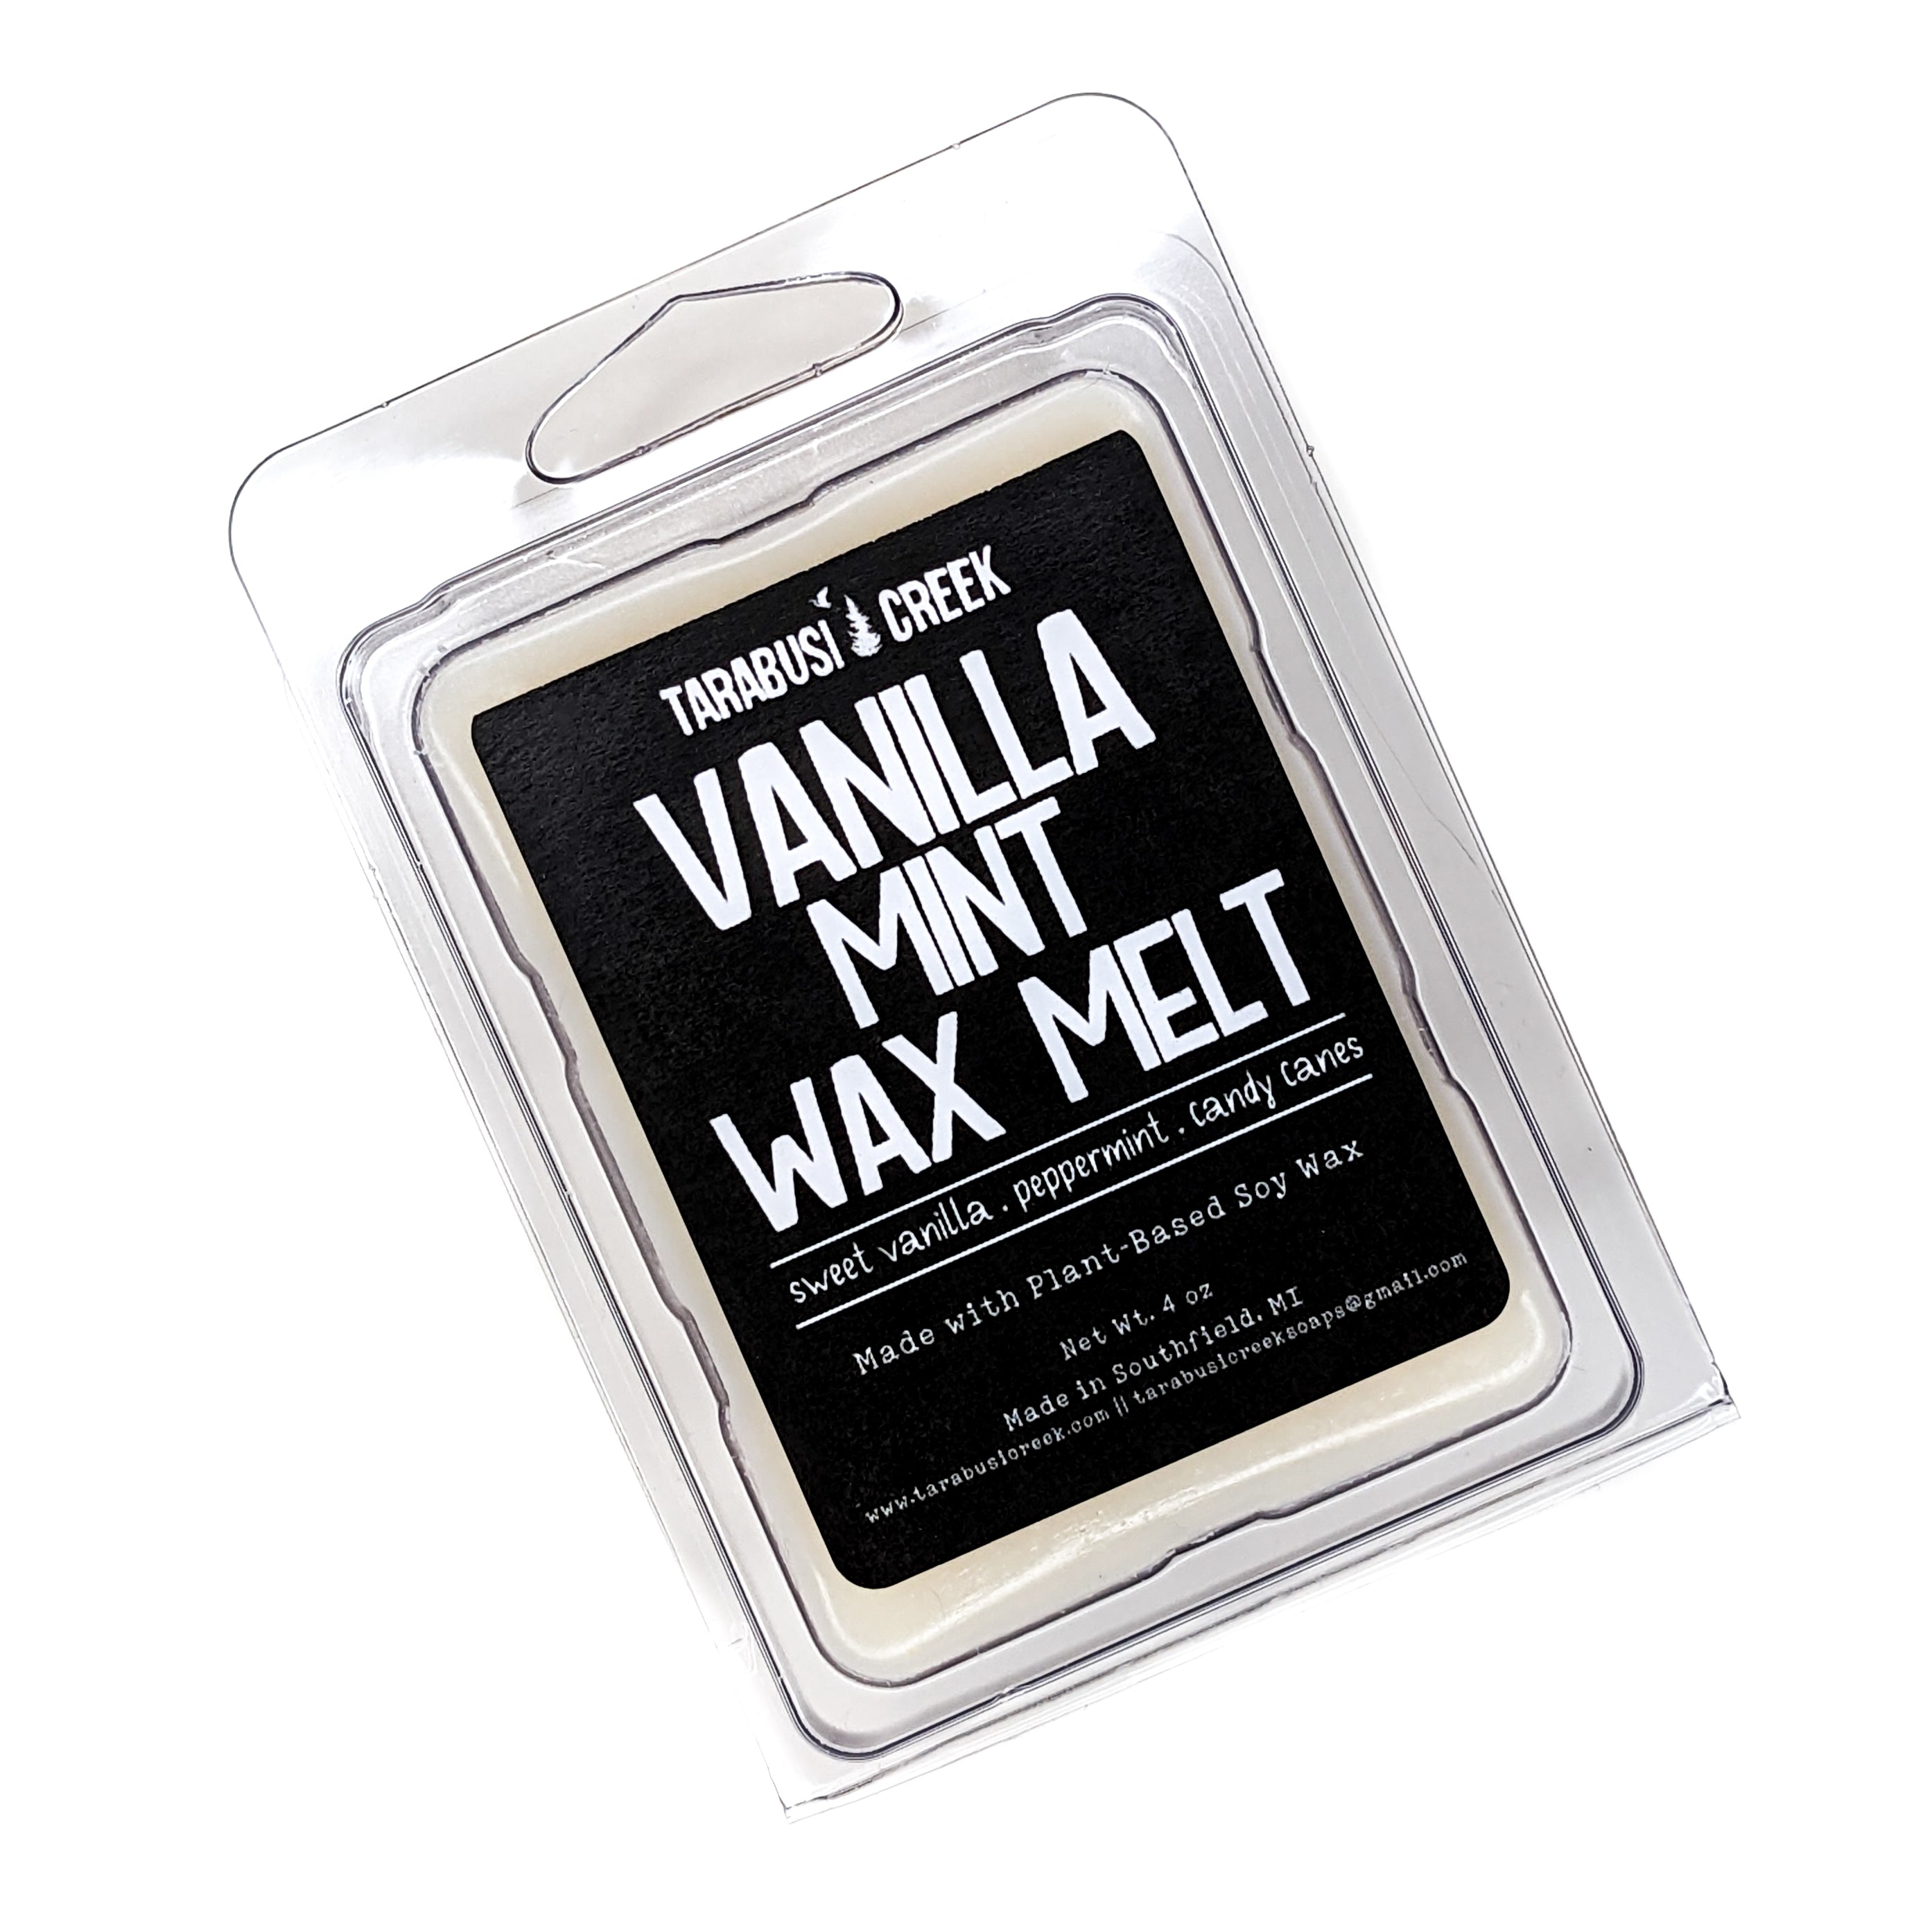 Vanilla wax melt